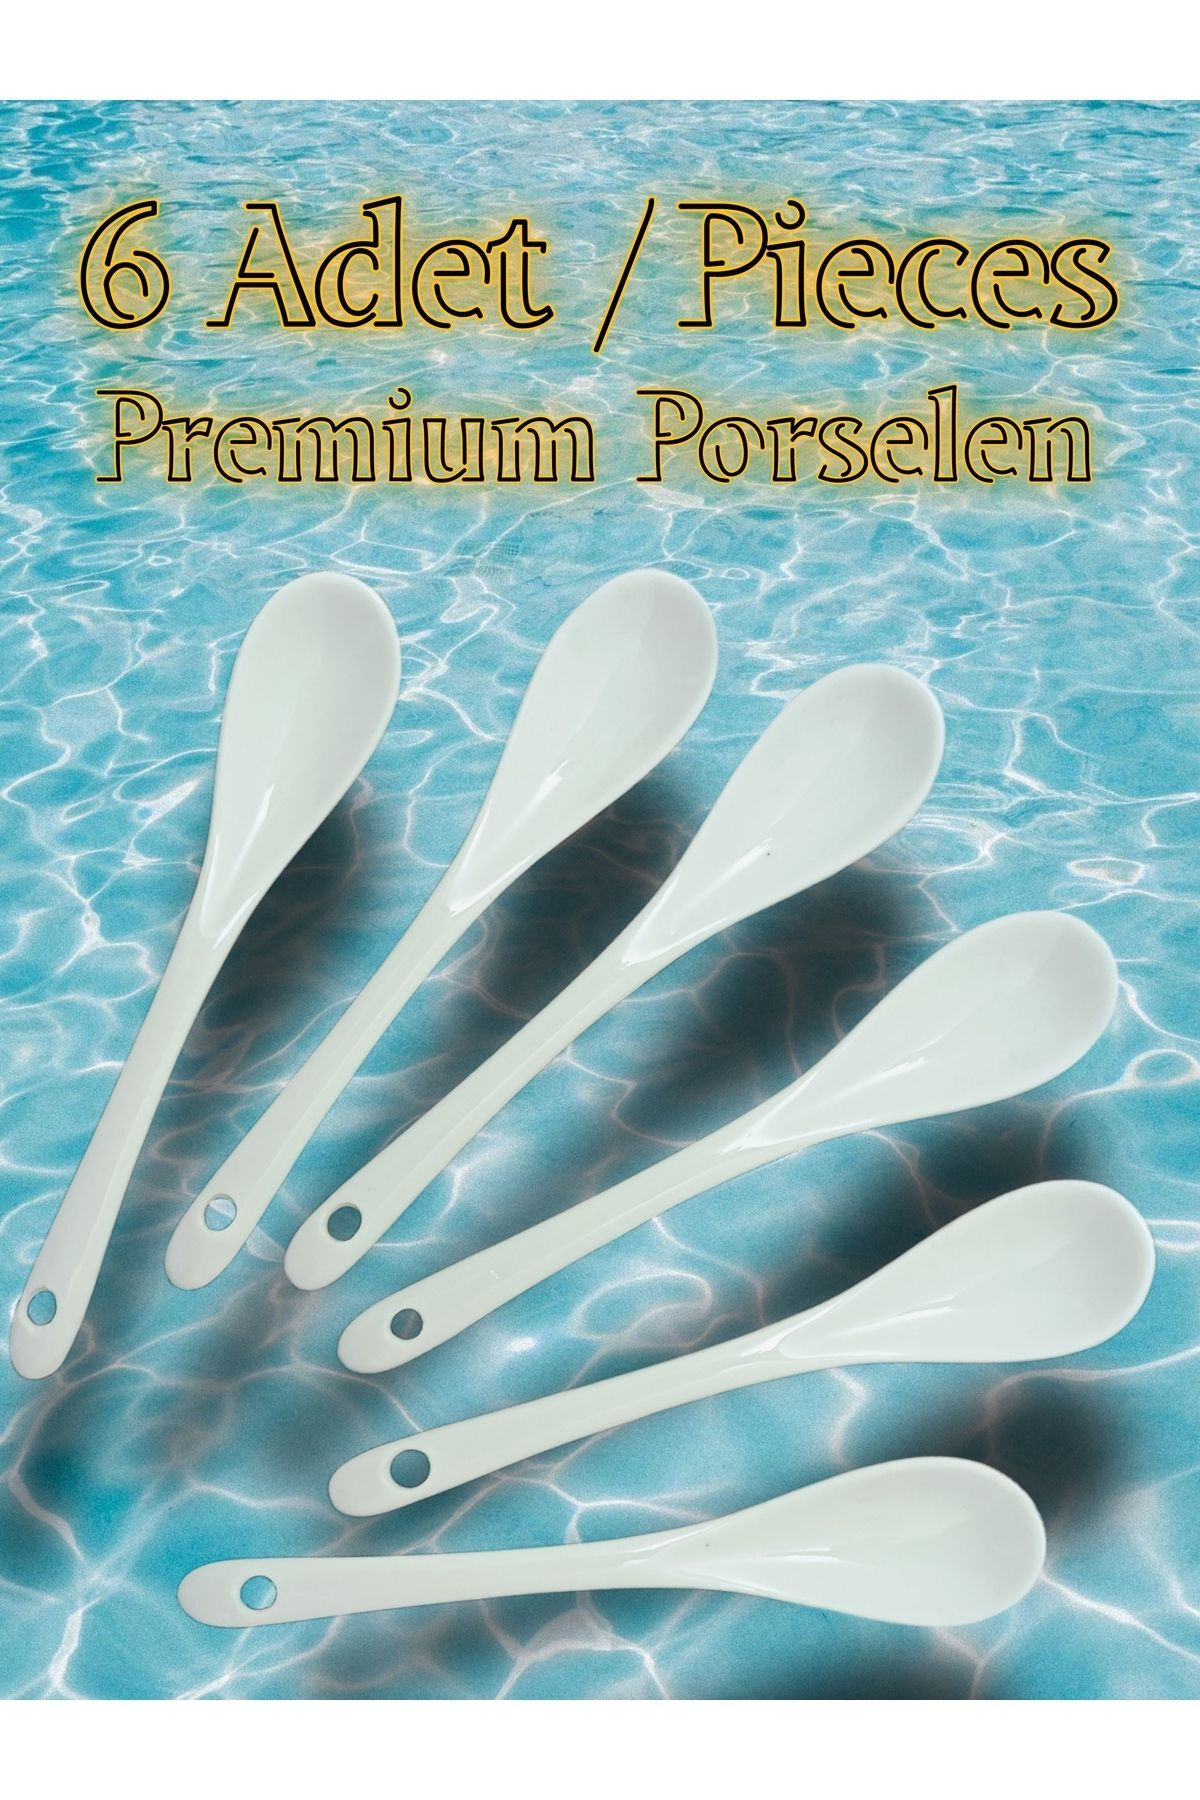 SAMSA 6 adet premium Porselen çay, şeker, sos, baharat, bal, reçel kaşığı 6 pieces of porcelain spoon